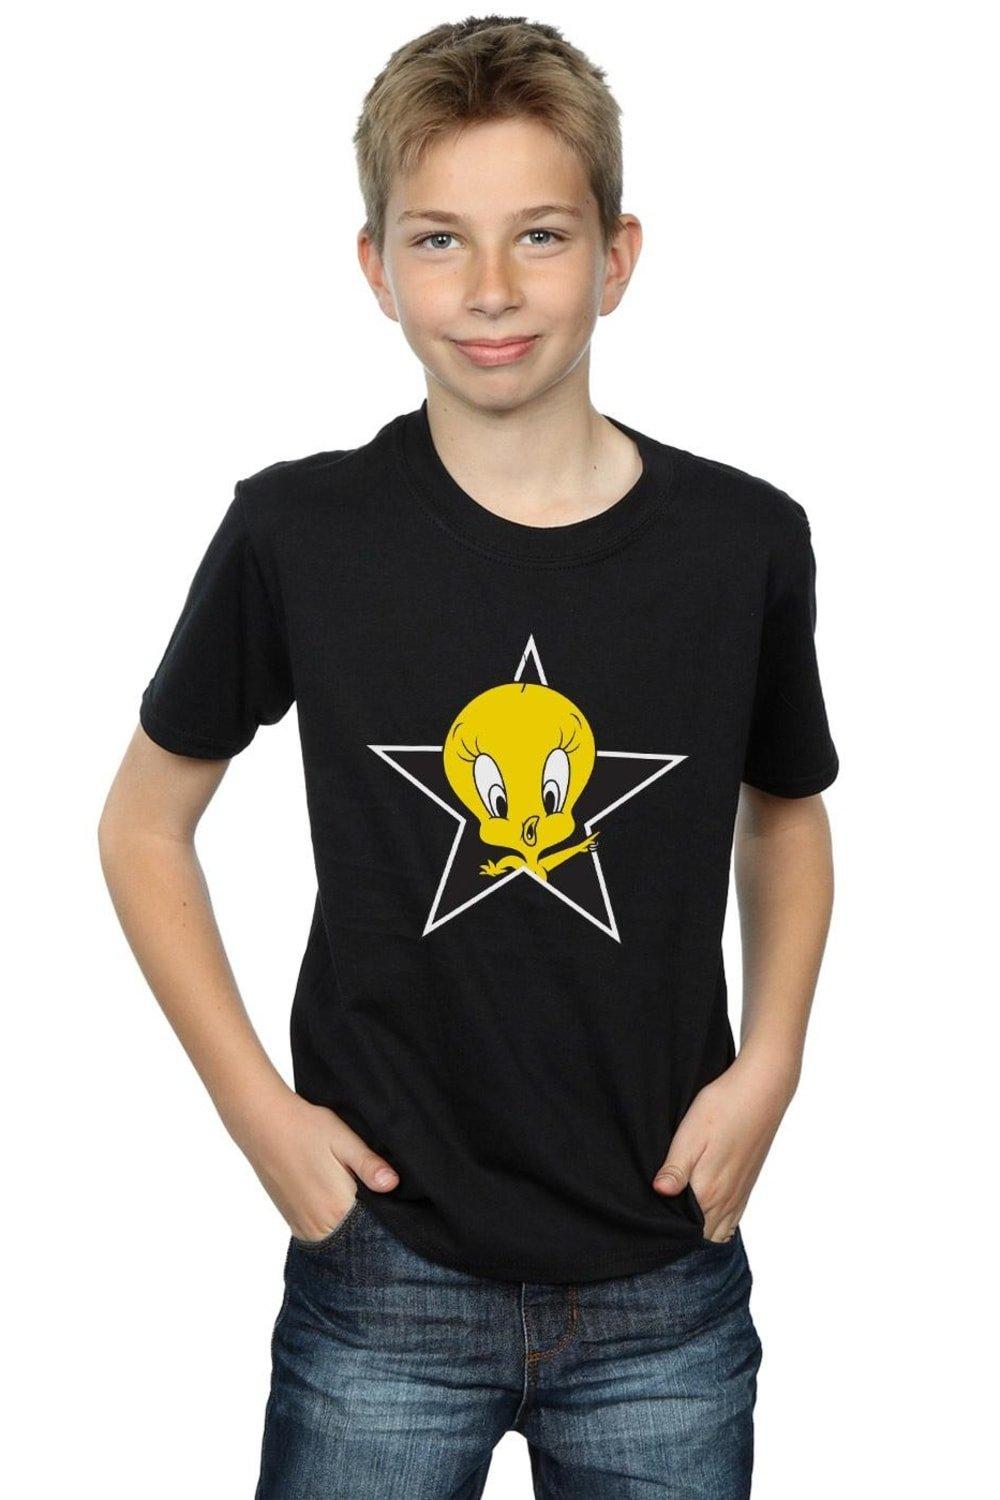 Tweety Pie Star T-Shirt